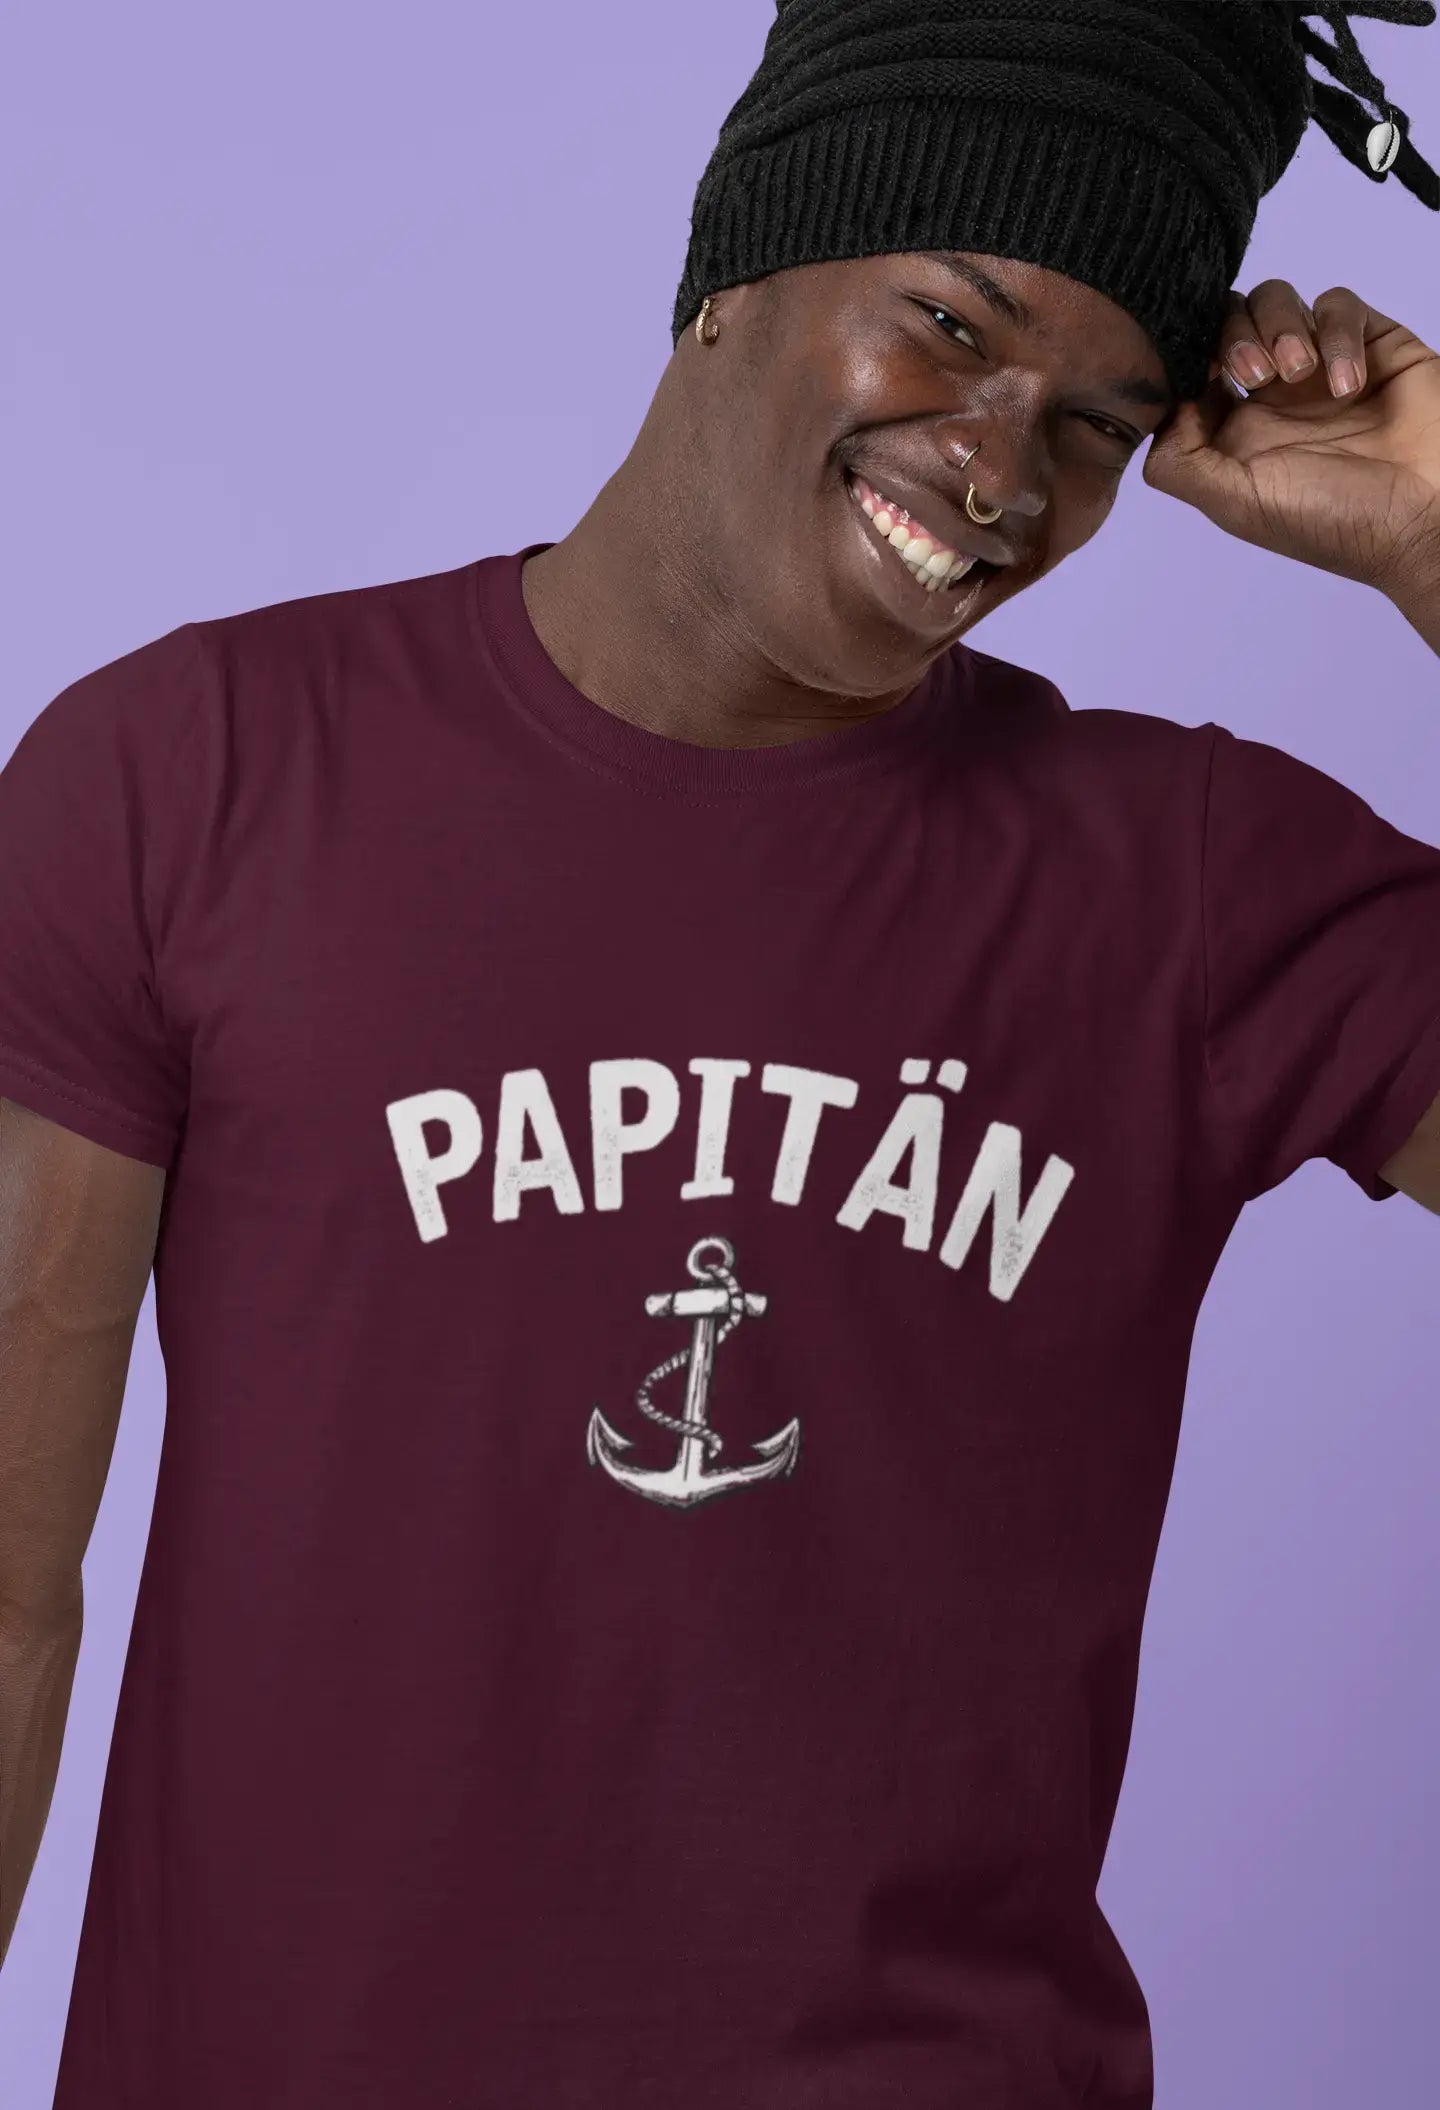 Men's Graphic T-Shirt Papitän Anker Idea Gift